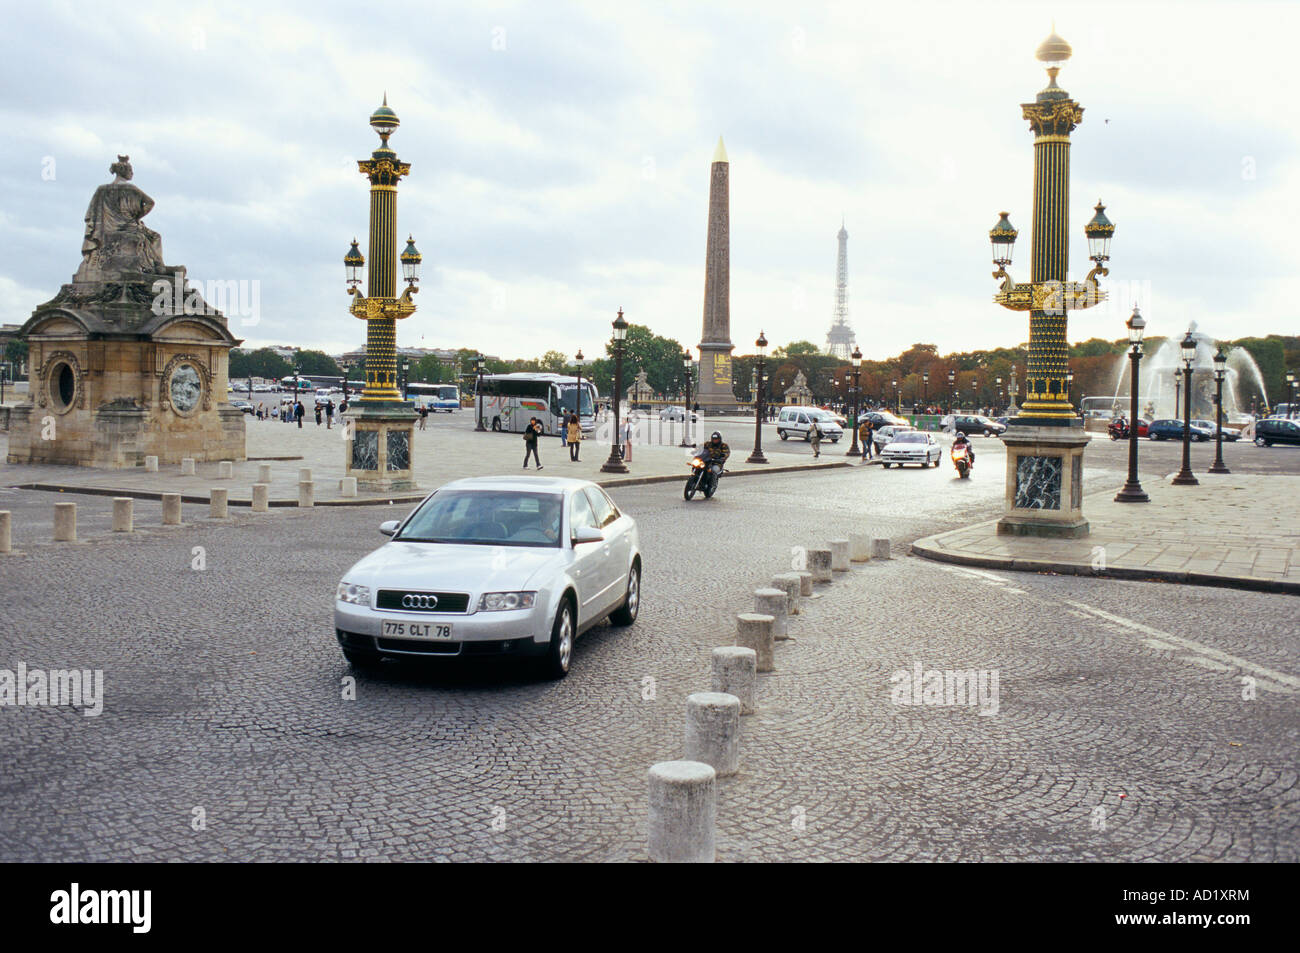 Silver Audi Car driving on the cobble stones at Place de la Concorde Paris France Stock Photo